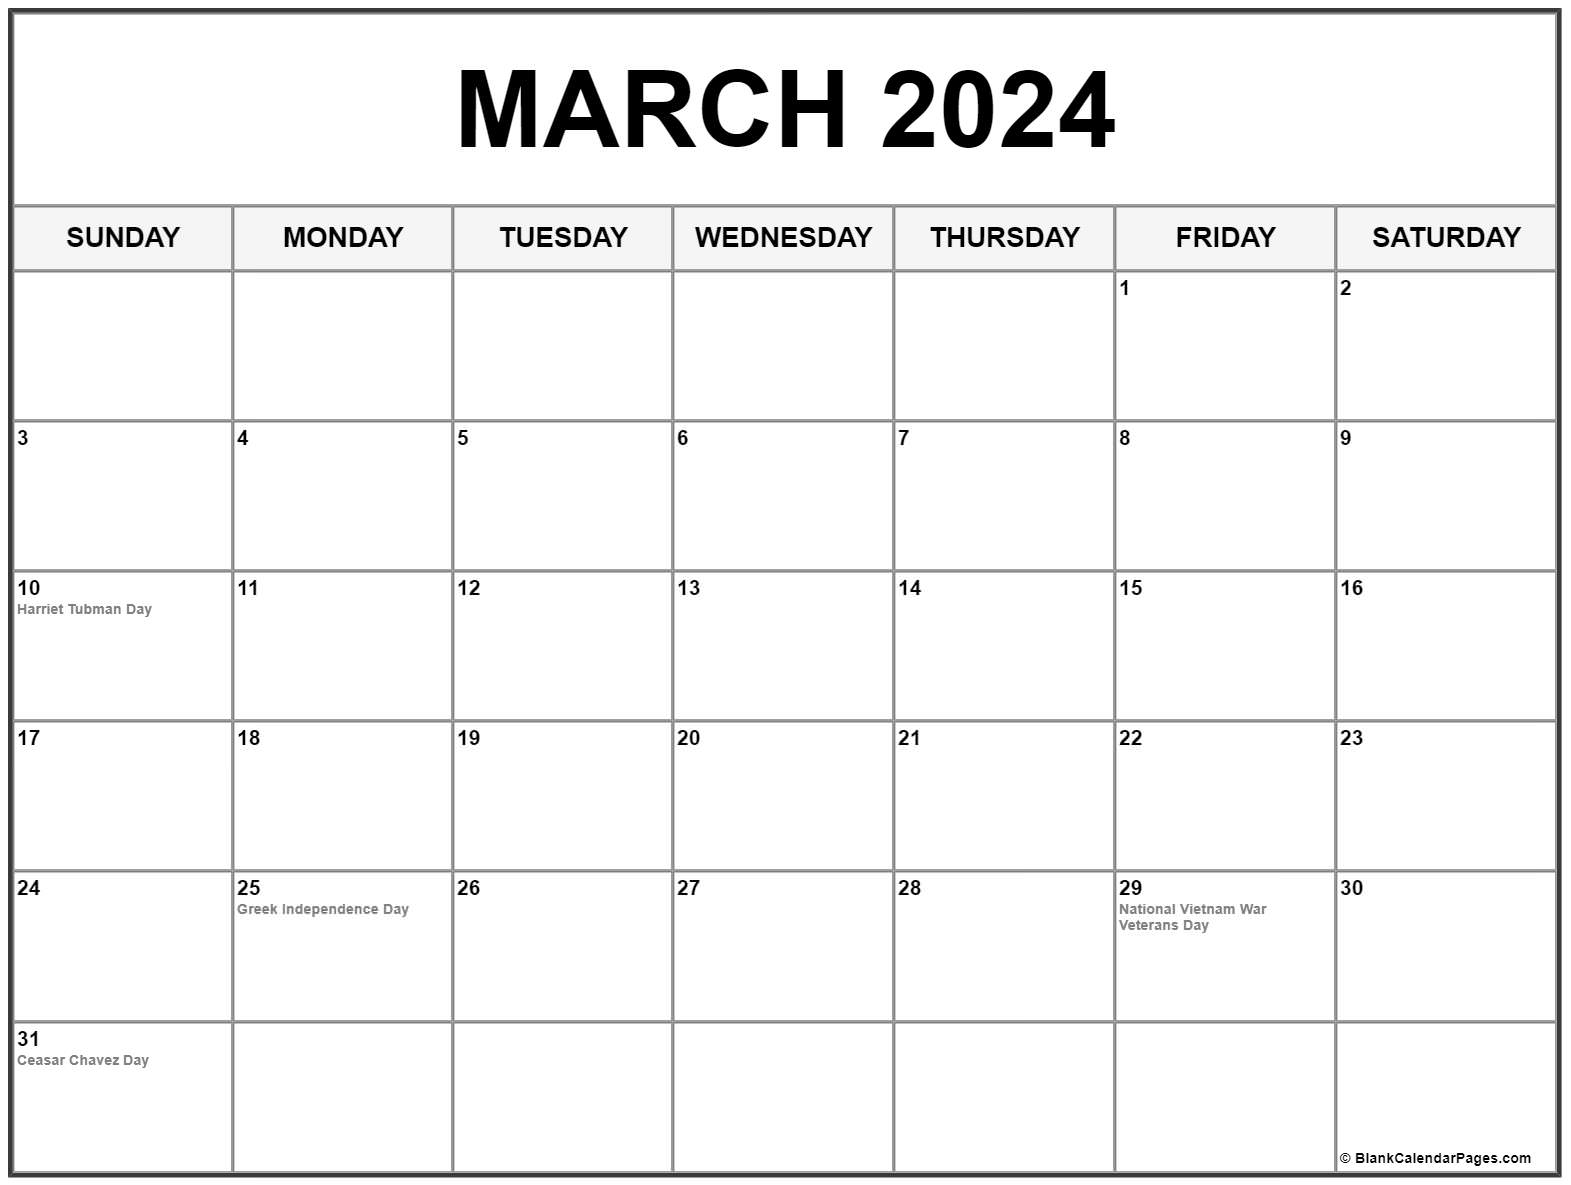 march-2024-calendar-printable-calendar